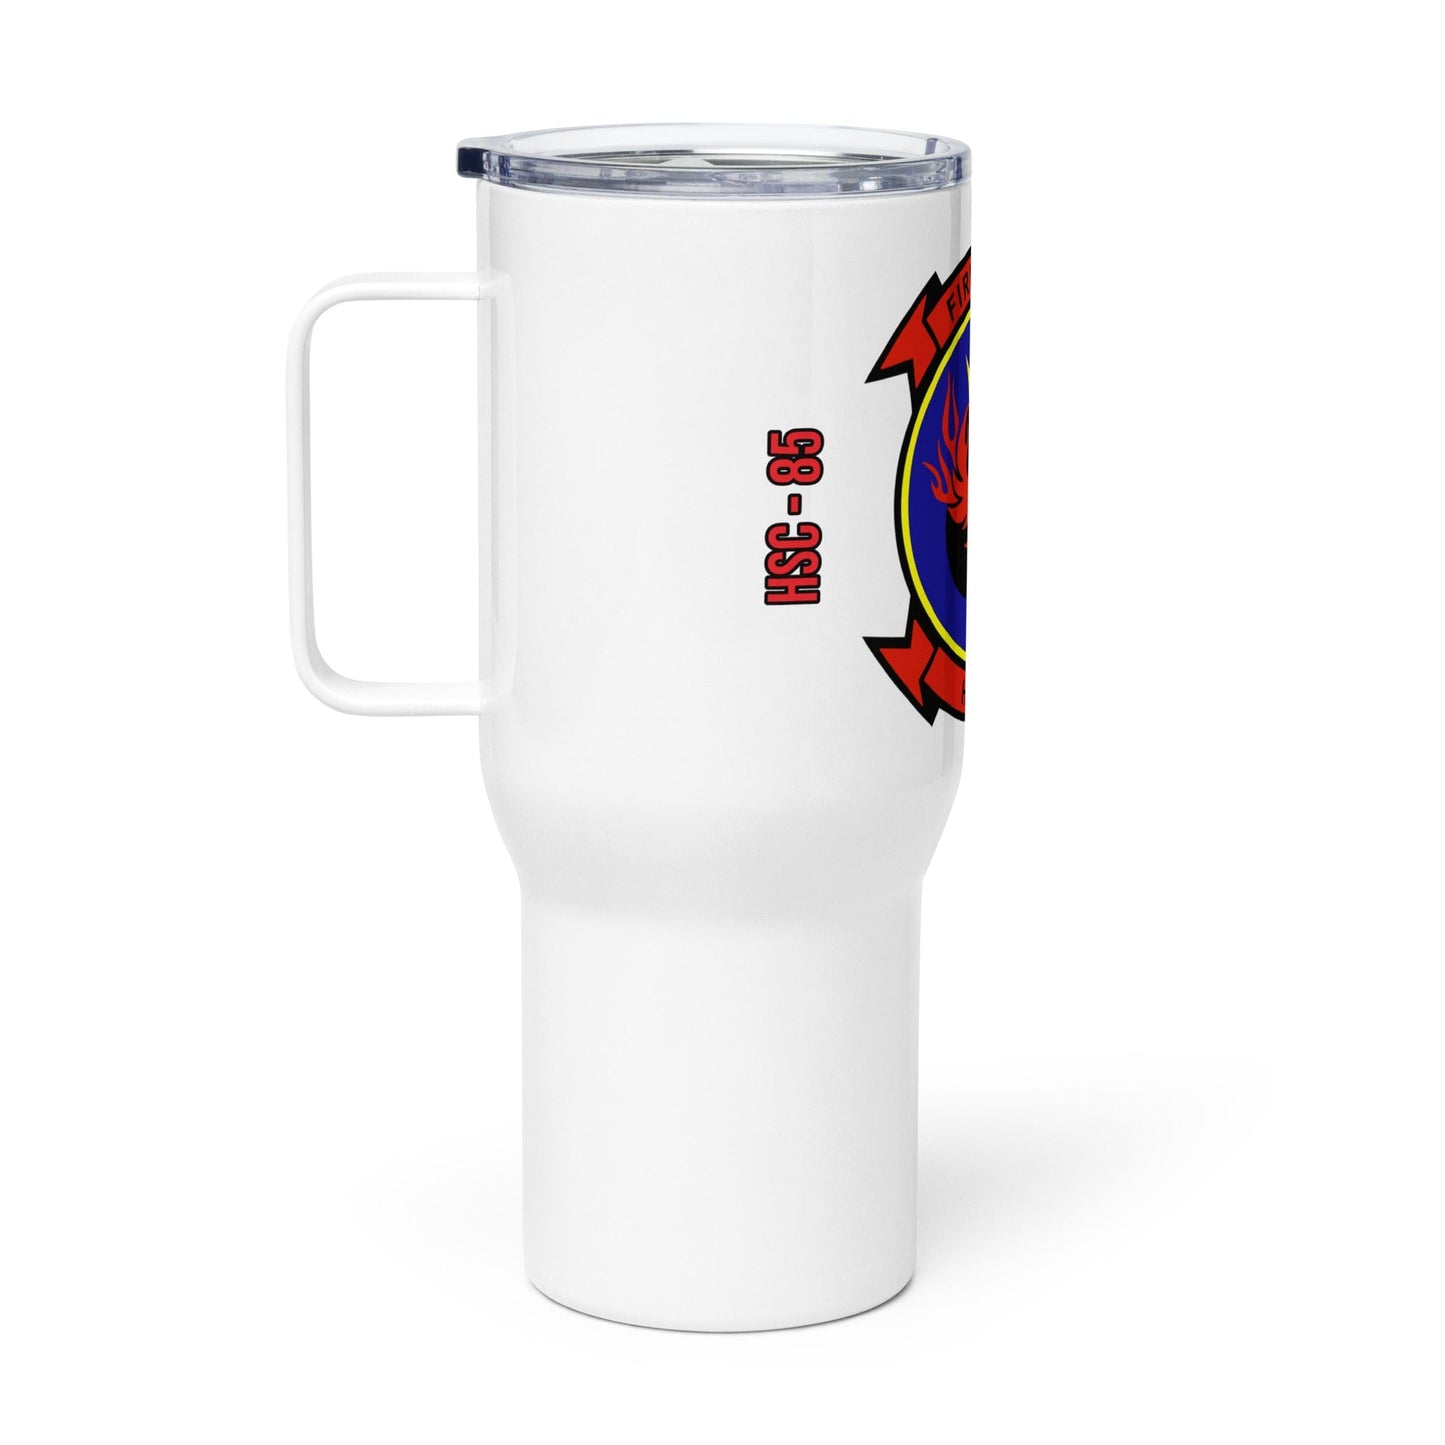 HSC-85 Travel mug